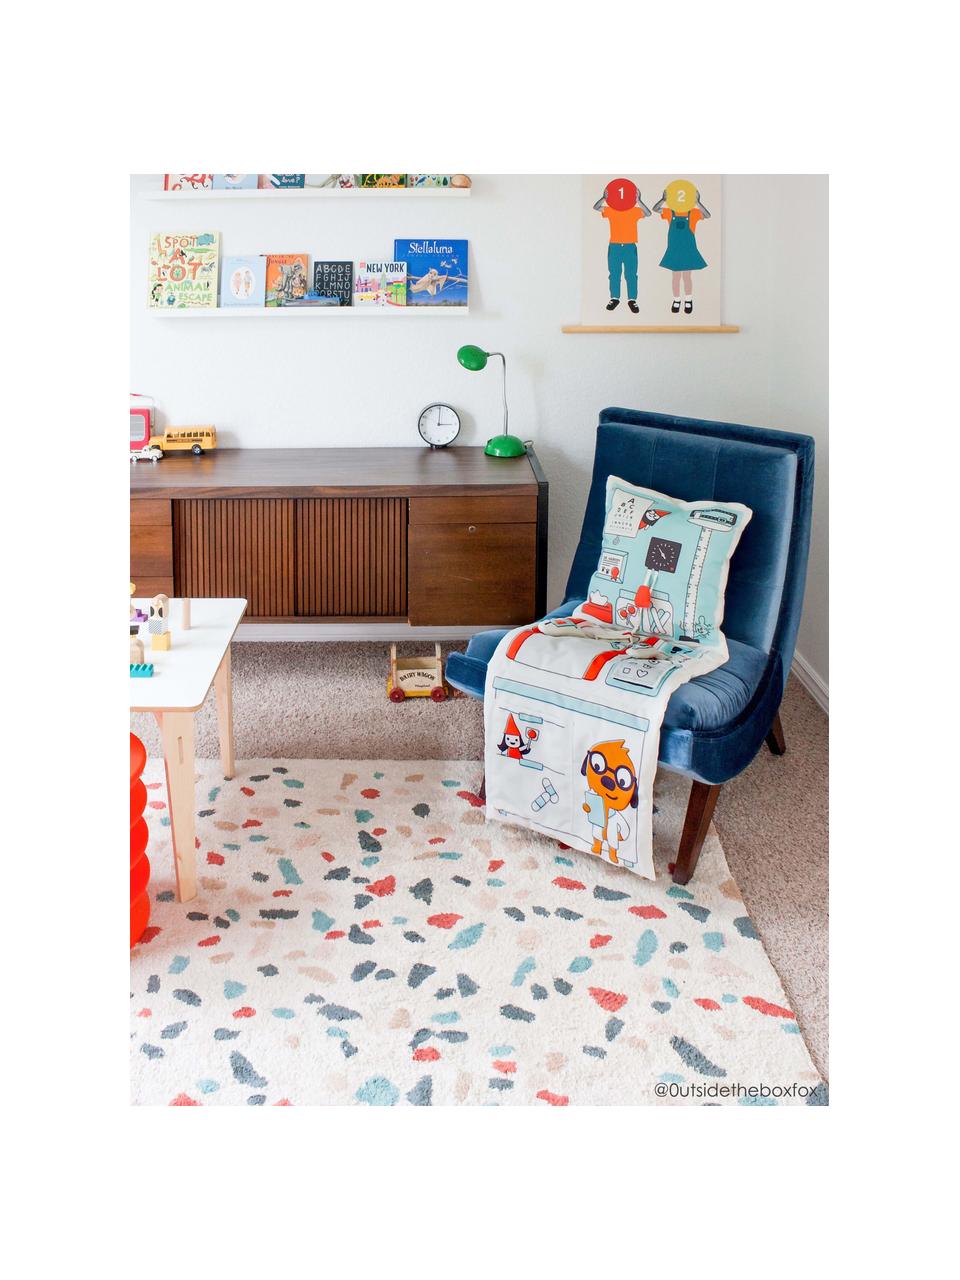 Ručně tkaný dětský koberec Terrazzo, pratelný, Světle béžová, více barev, Š 140 cm, D 200 cm (velikost M)